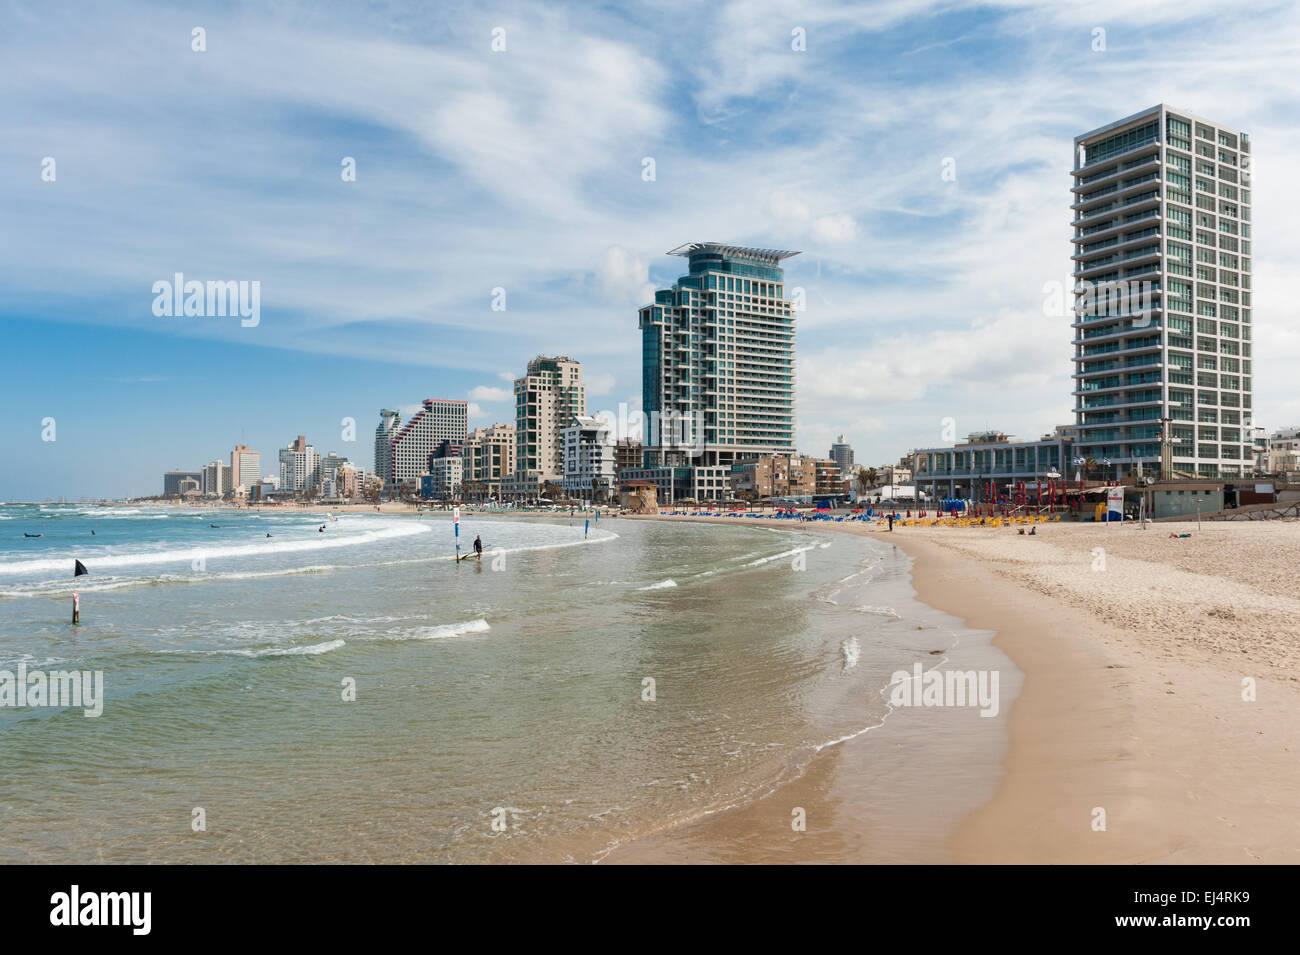 Israël, Tel Aviv, paysage urbain comme vu de la plage Banque D'Images